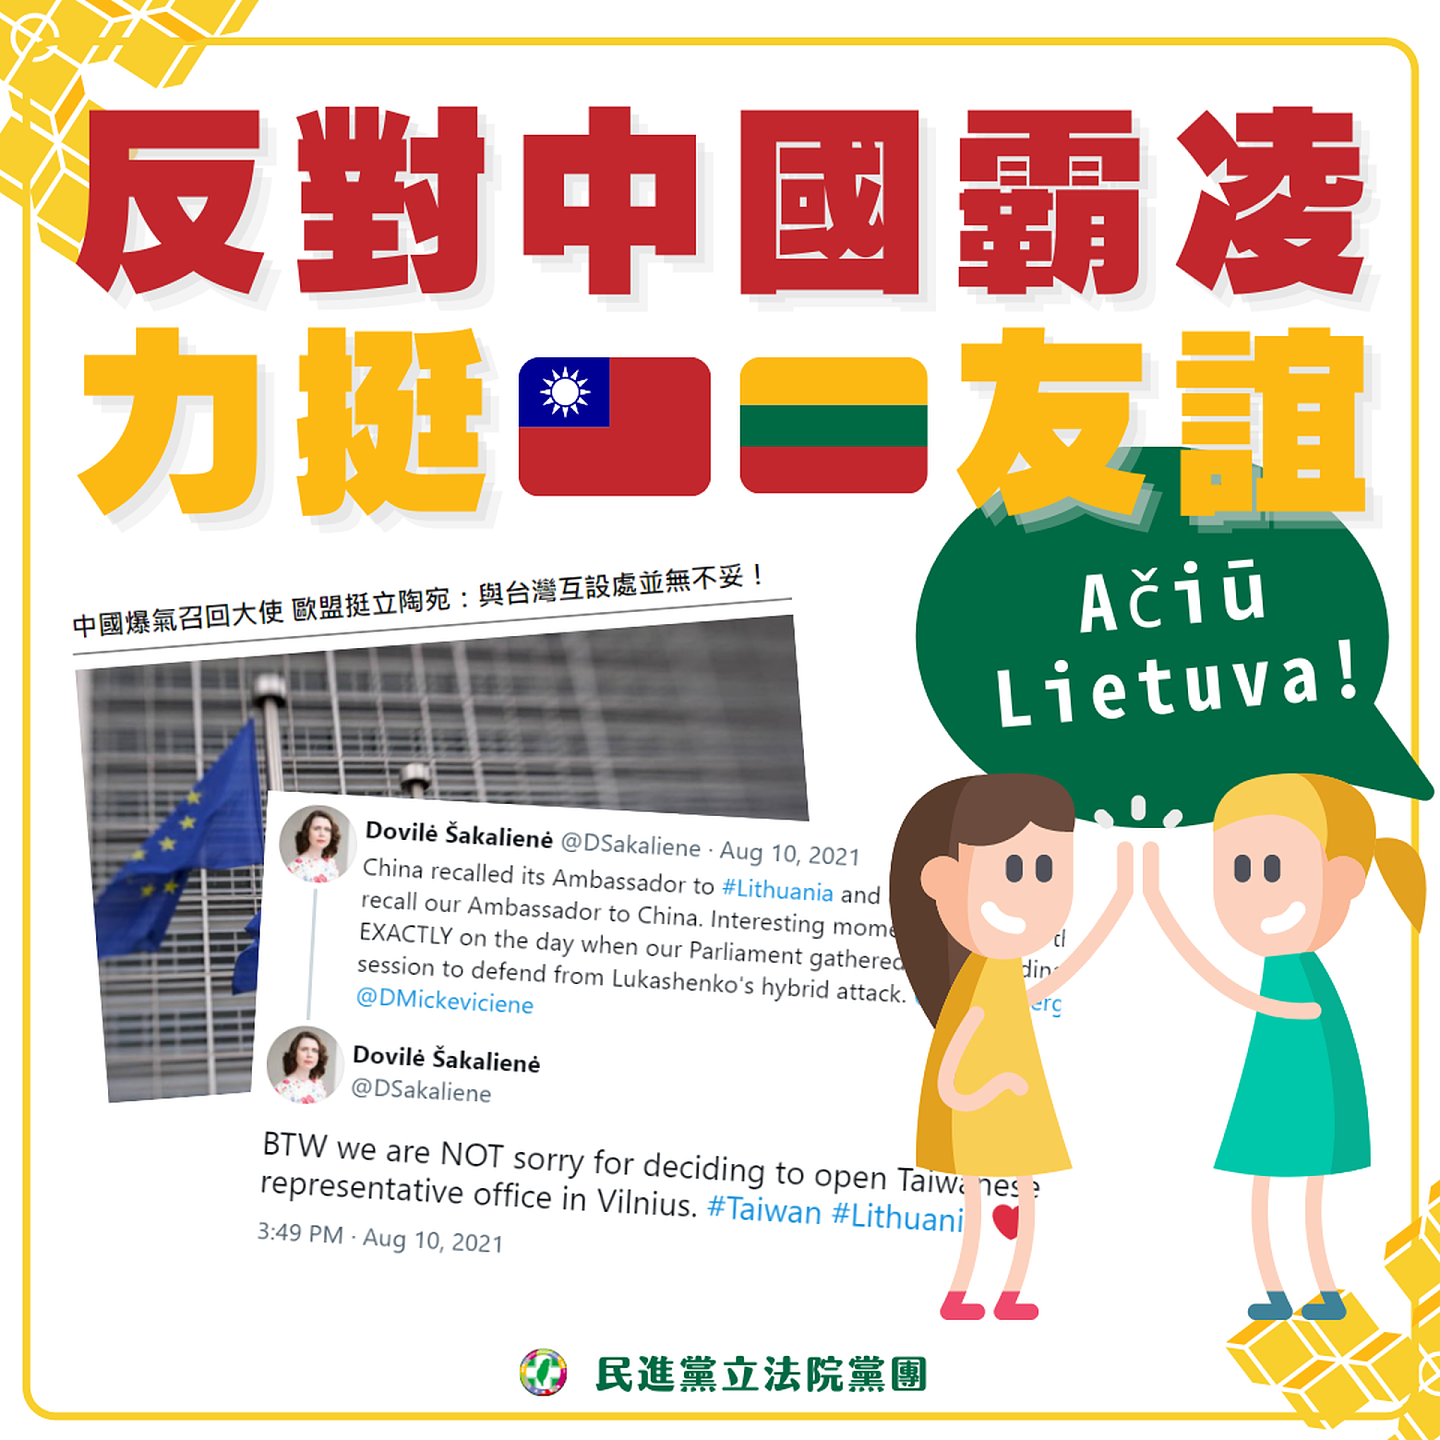 北京激烈抗议立陶宛允许台湾设立以“台湾”为名的代表处，民进党遗憾中国採“惩罚性外交”，强调没有国家应该为与台湾友好而受到报复。（民进党立法院党团提供）